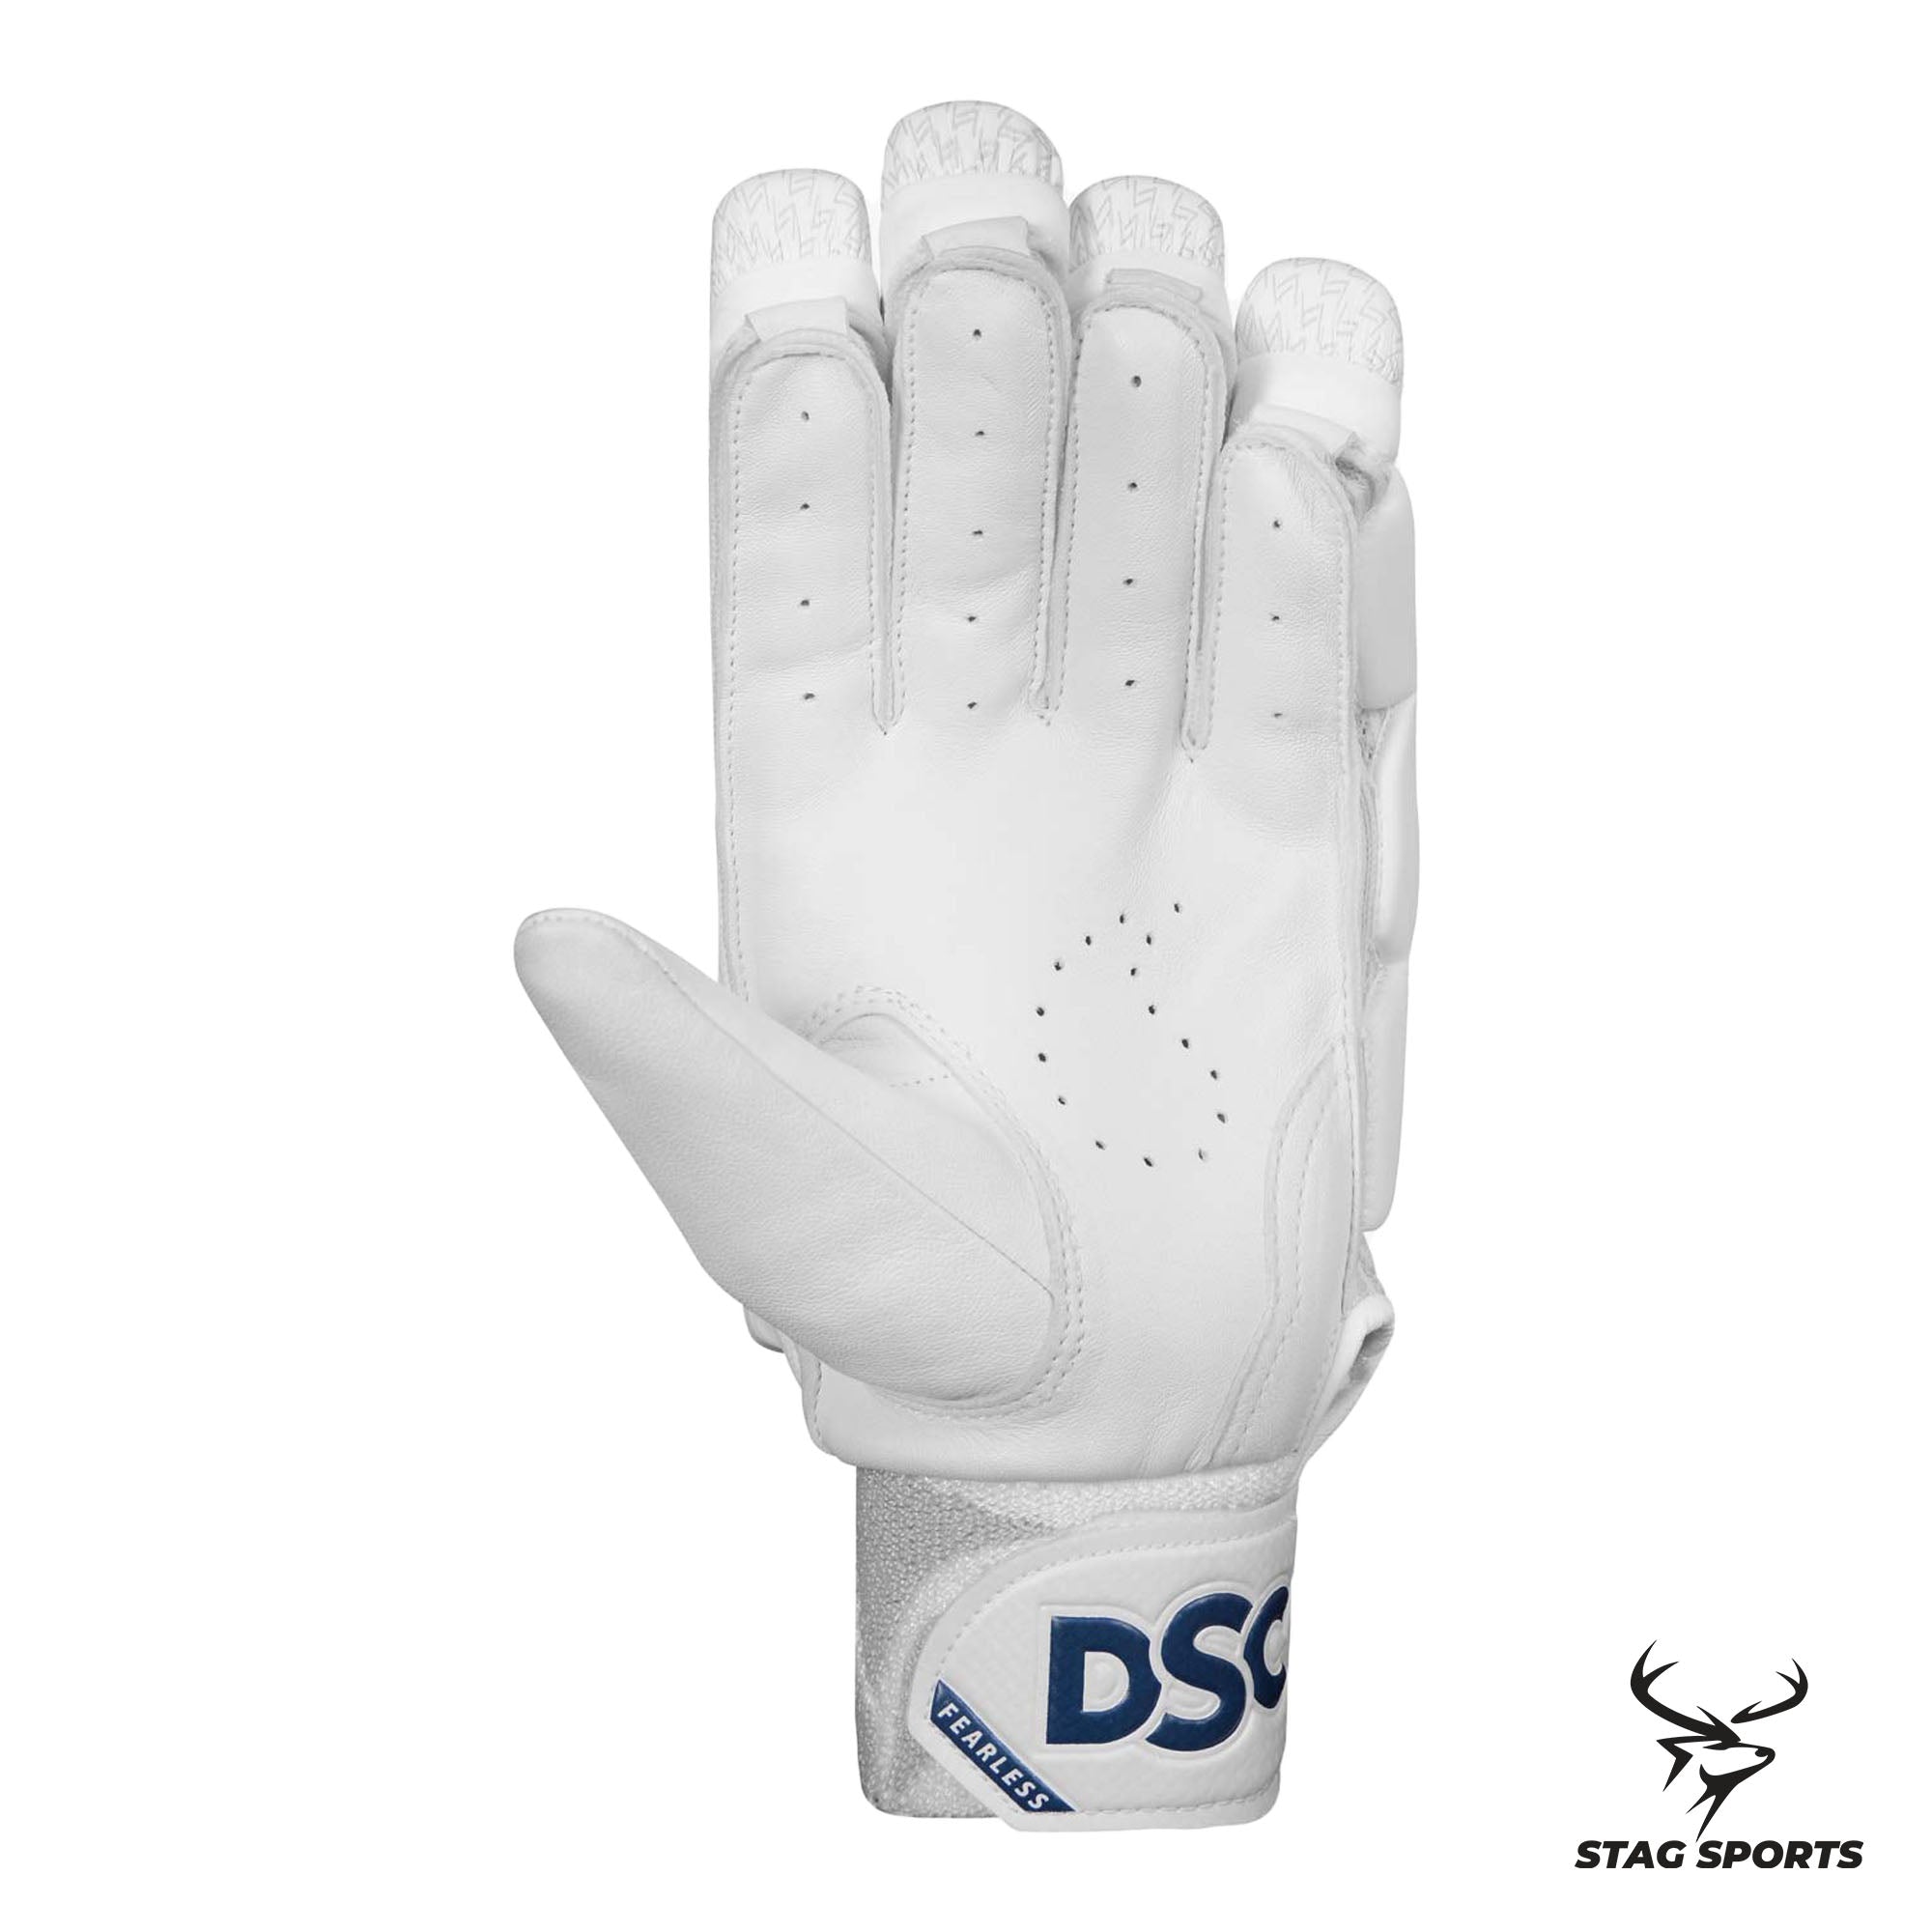 Stag Sports Online Shop For DSC Cricket Batting Gloves